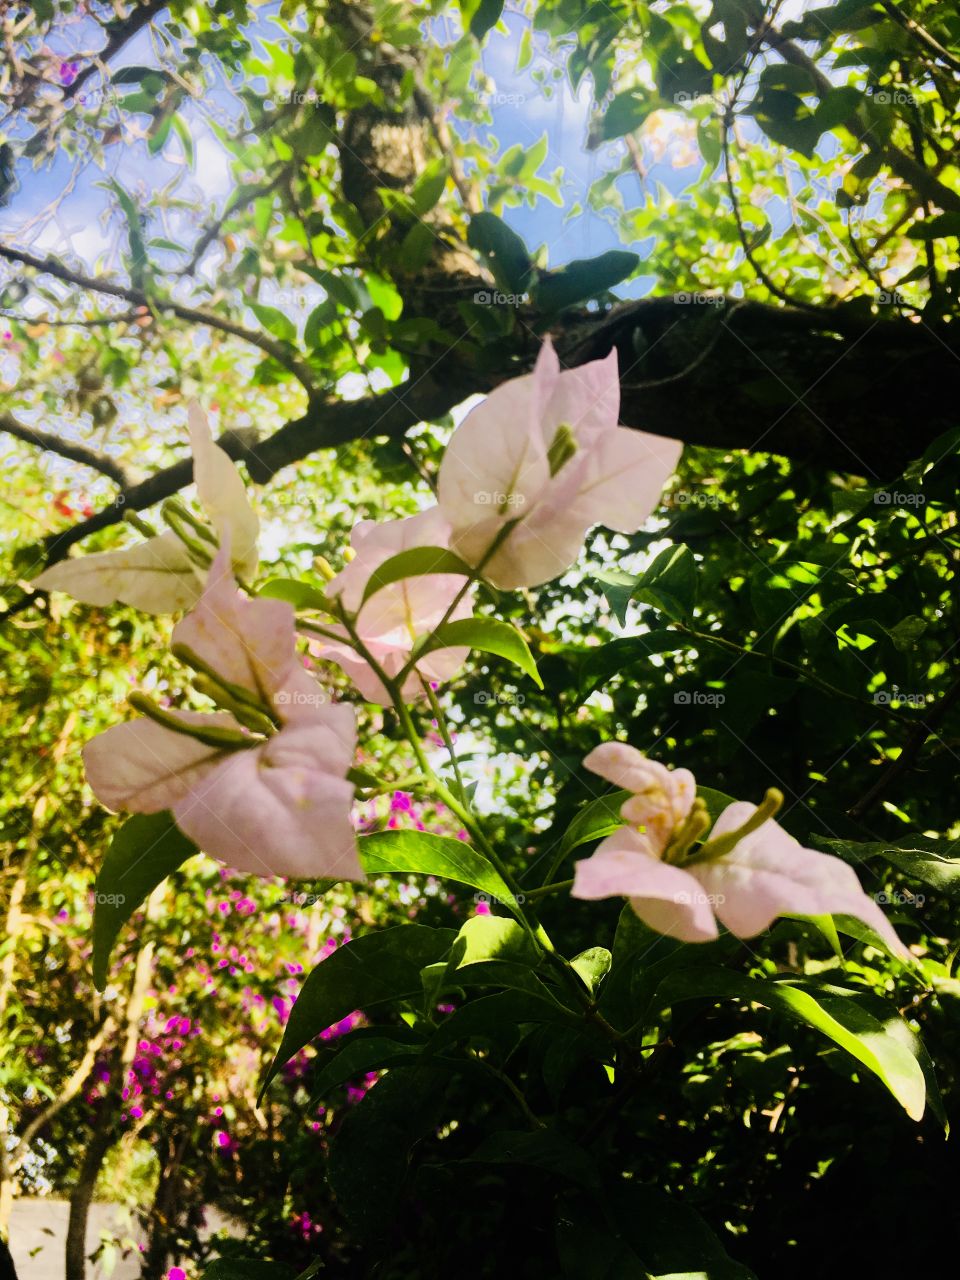 ‪Pausa para admirar e clicar as primaveras do nosso #jardim: as #pétalas dessa rósea-branca (ou seria alvi-rosa?) são belíssimas! 📷 ‬
‪#Fotografia é nosso #hobby!‬
‪#flores #natureza #paisagem ‬